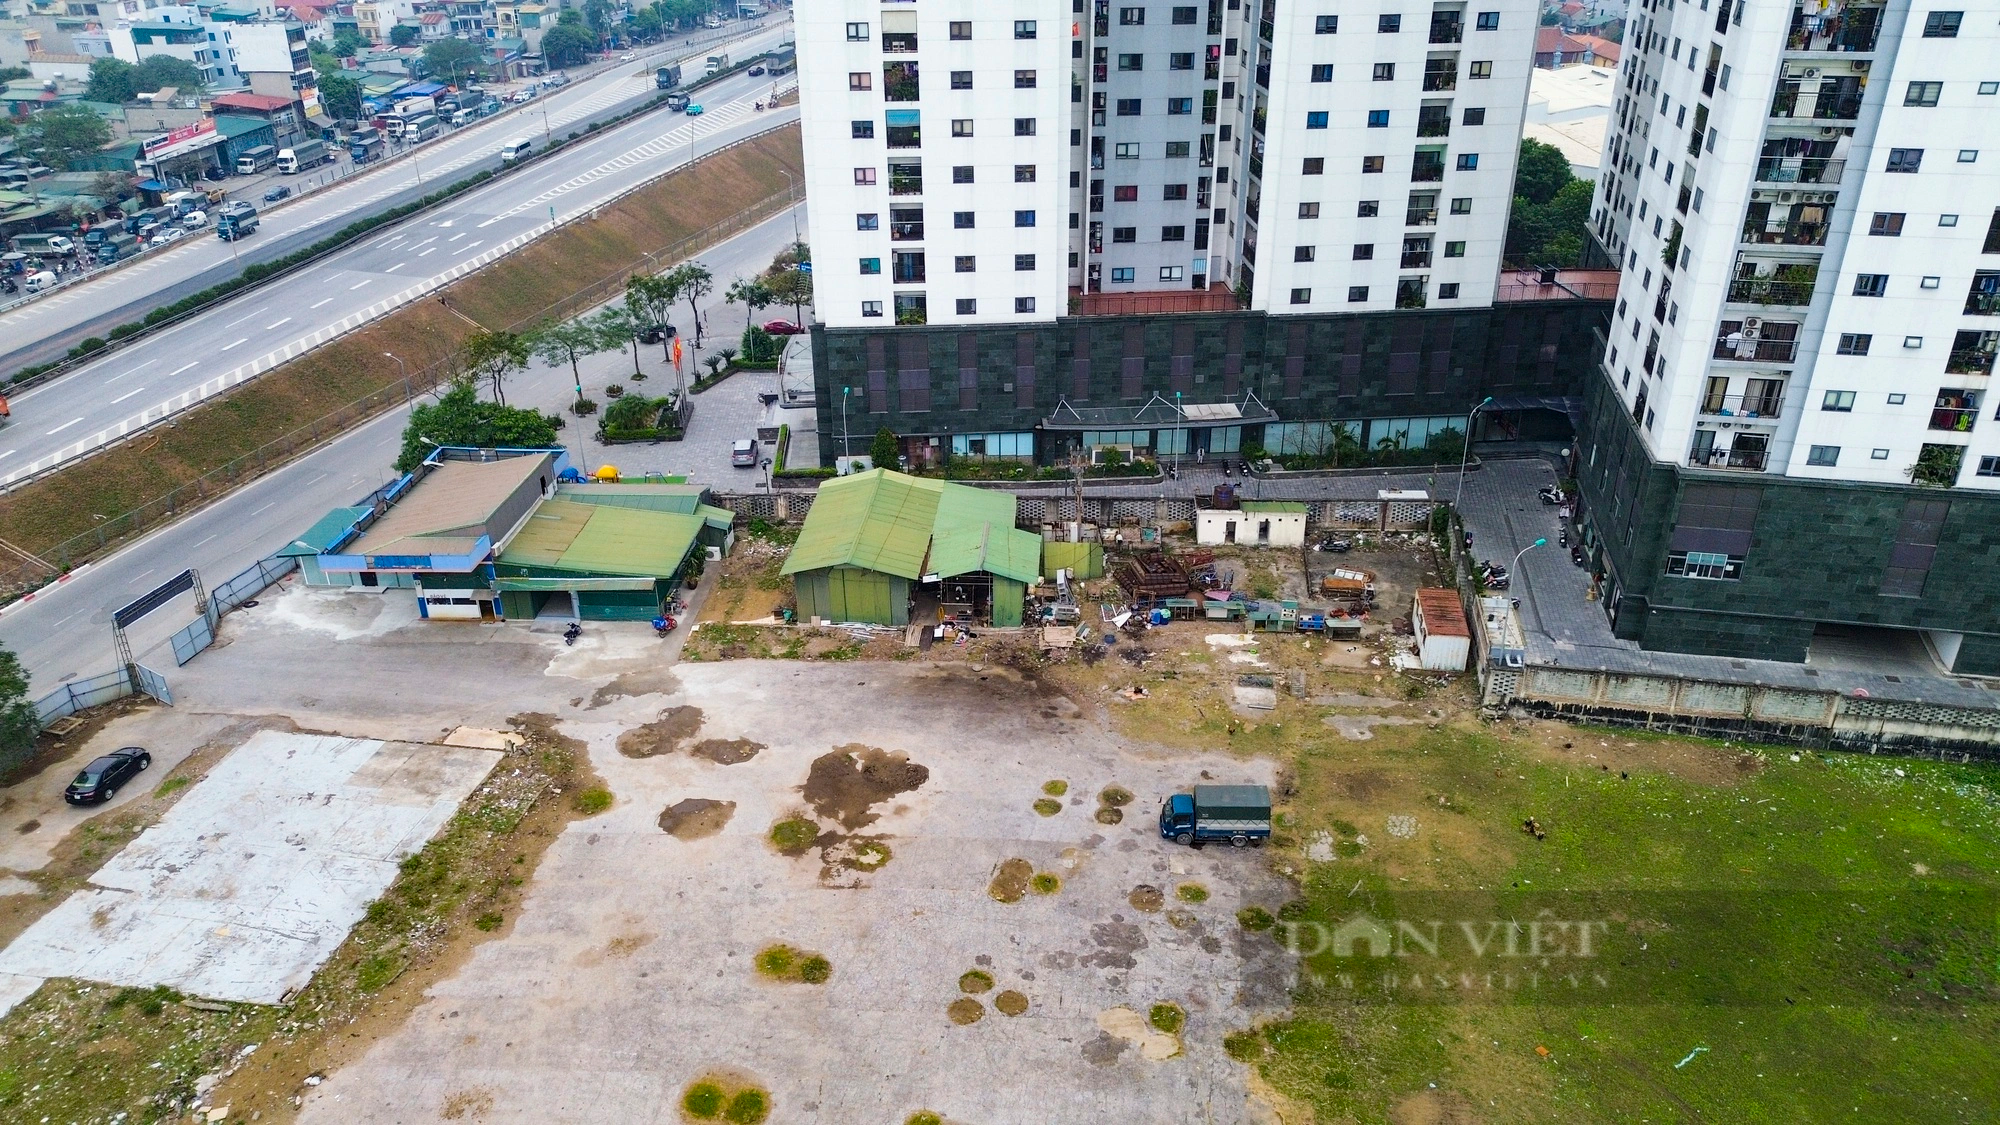 Sau 7 năm, khu đất đắc địa xây bến xe mới ở Hà Nội vẫn chỉ là bãi đất trống chăn thả trâu, gà vịt- Ảnh 9.